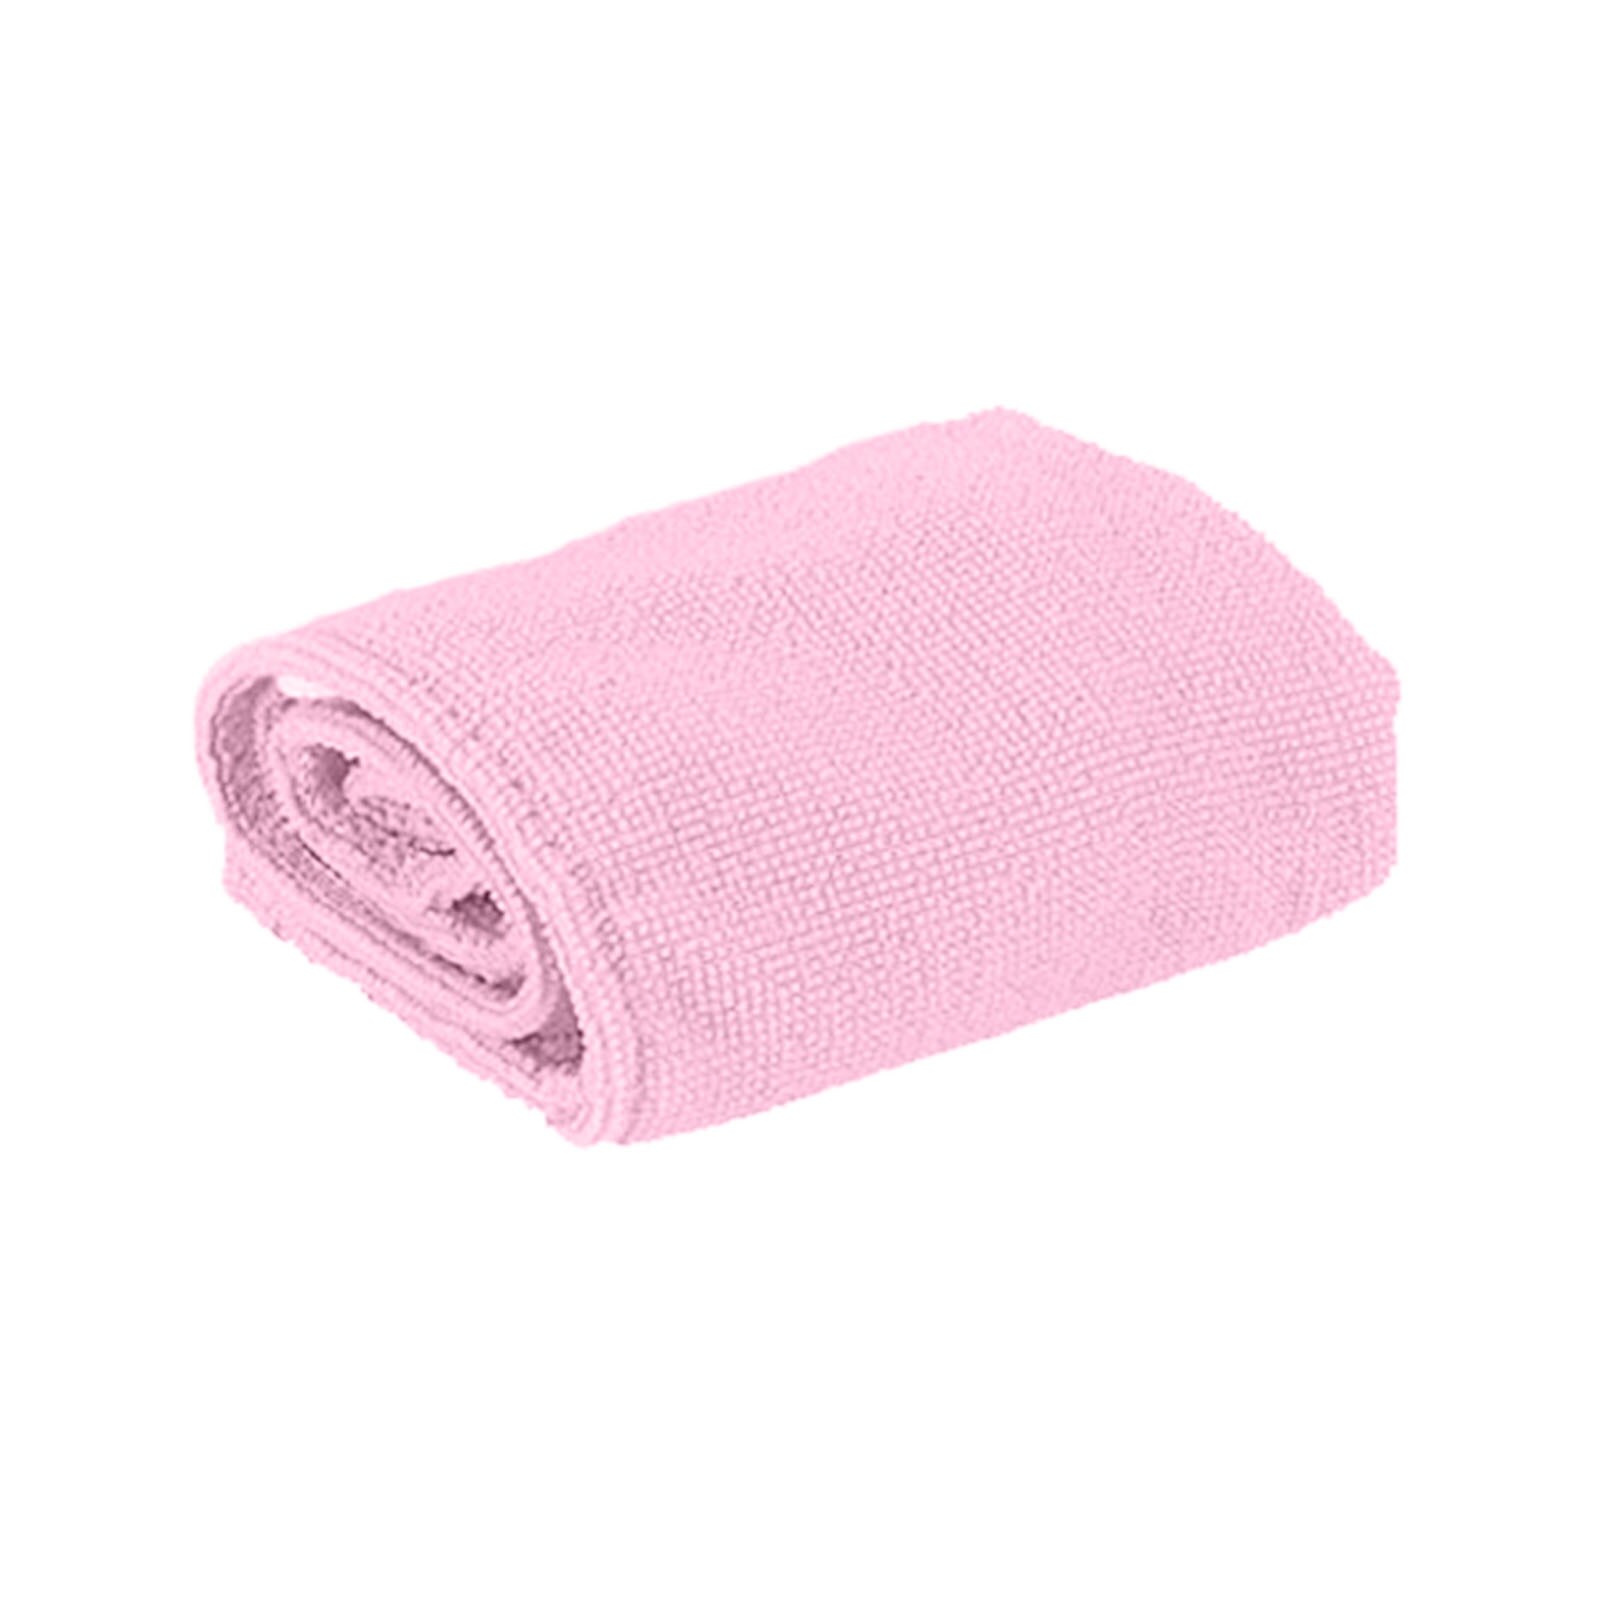 Magic Instant Bad Wrap Hoed Quick Cap Tulband Droog Haar Handdoek Sneldrogend Haar Handdoek Snelle Sterk Water Absorberende Hoed cap: Pink 